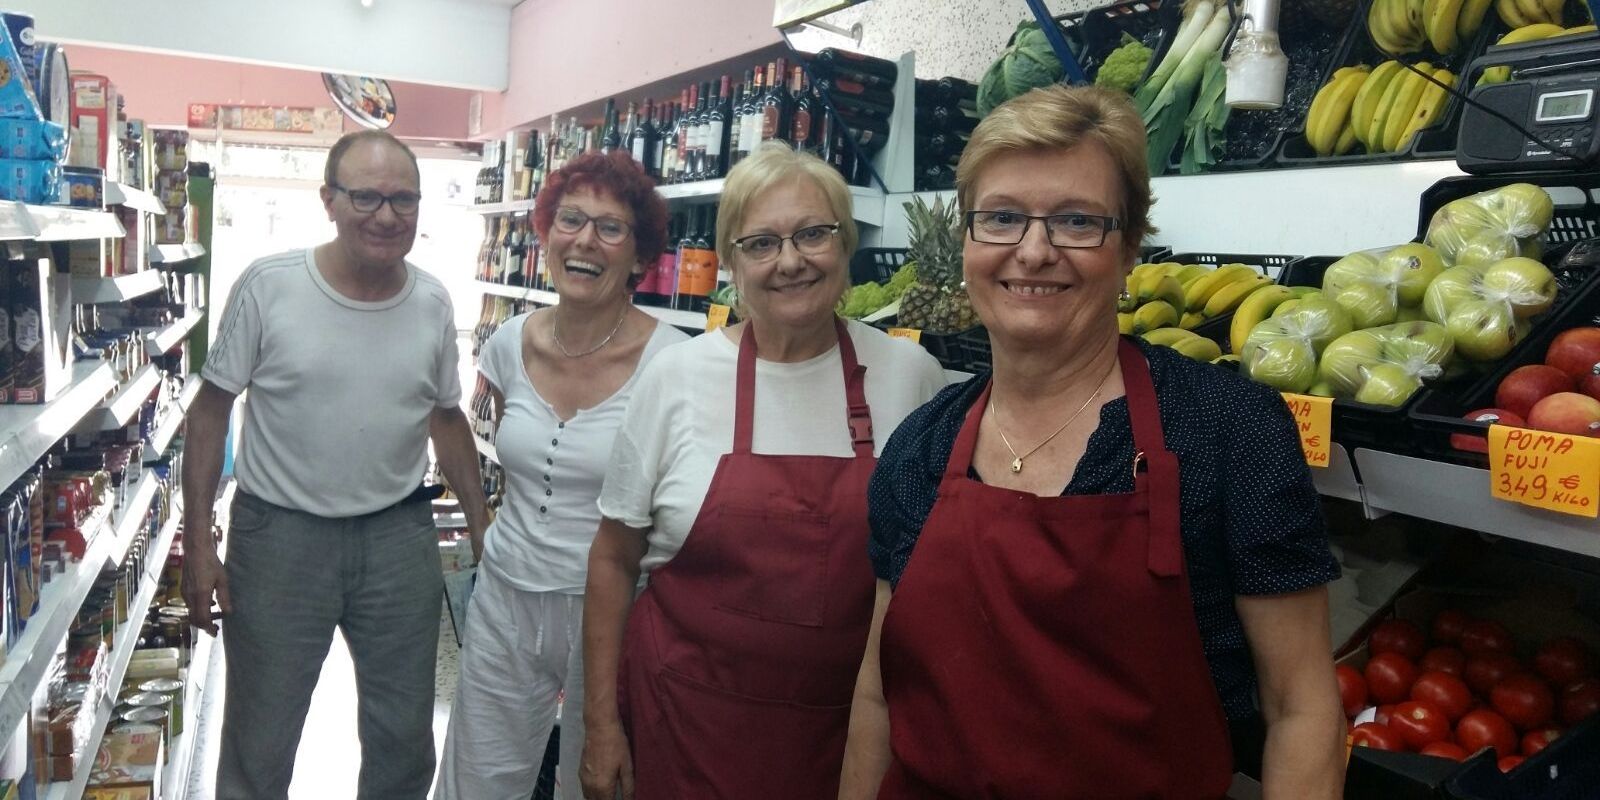 El supermercat La Muntanyesa, situat a la Floresta, va tancar el 2016 després de 67 anys per jubilació.